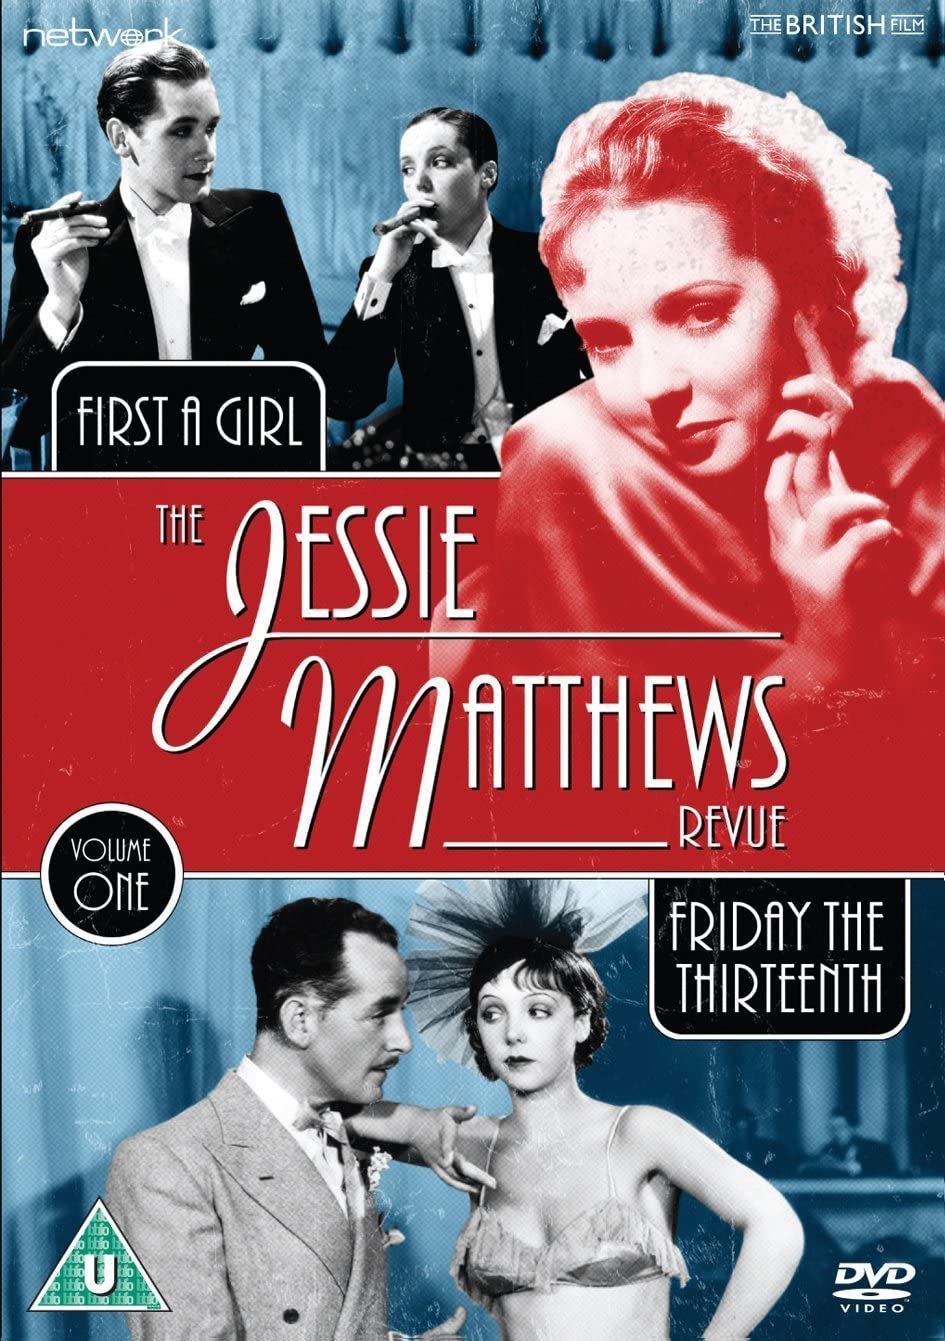 The Jessie Matthews Revue Vol. 1 [DVD]